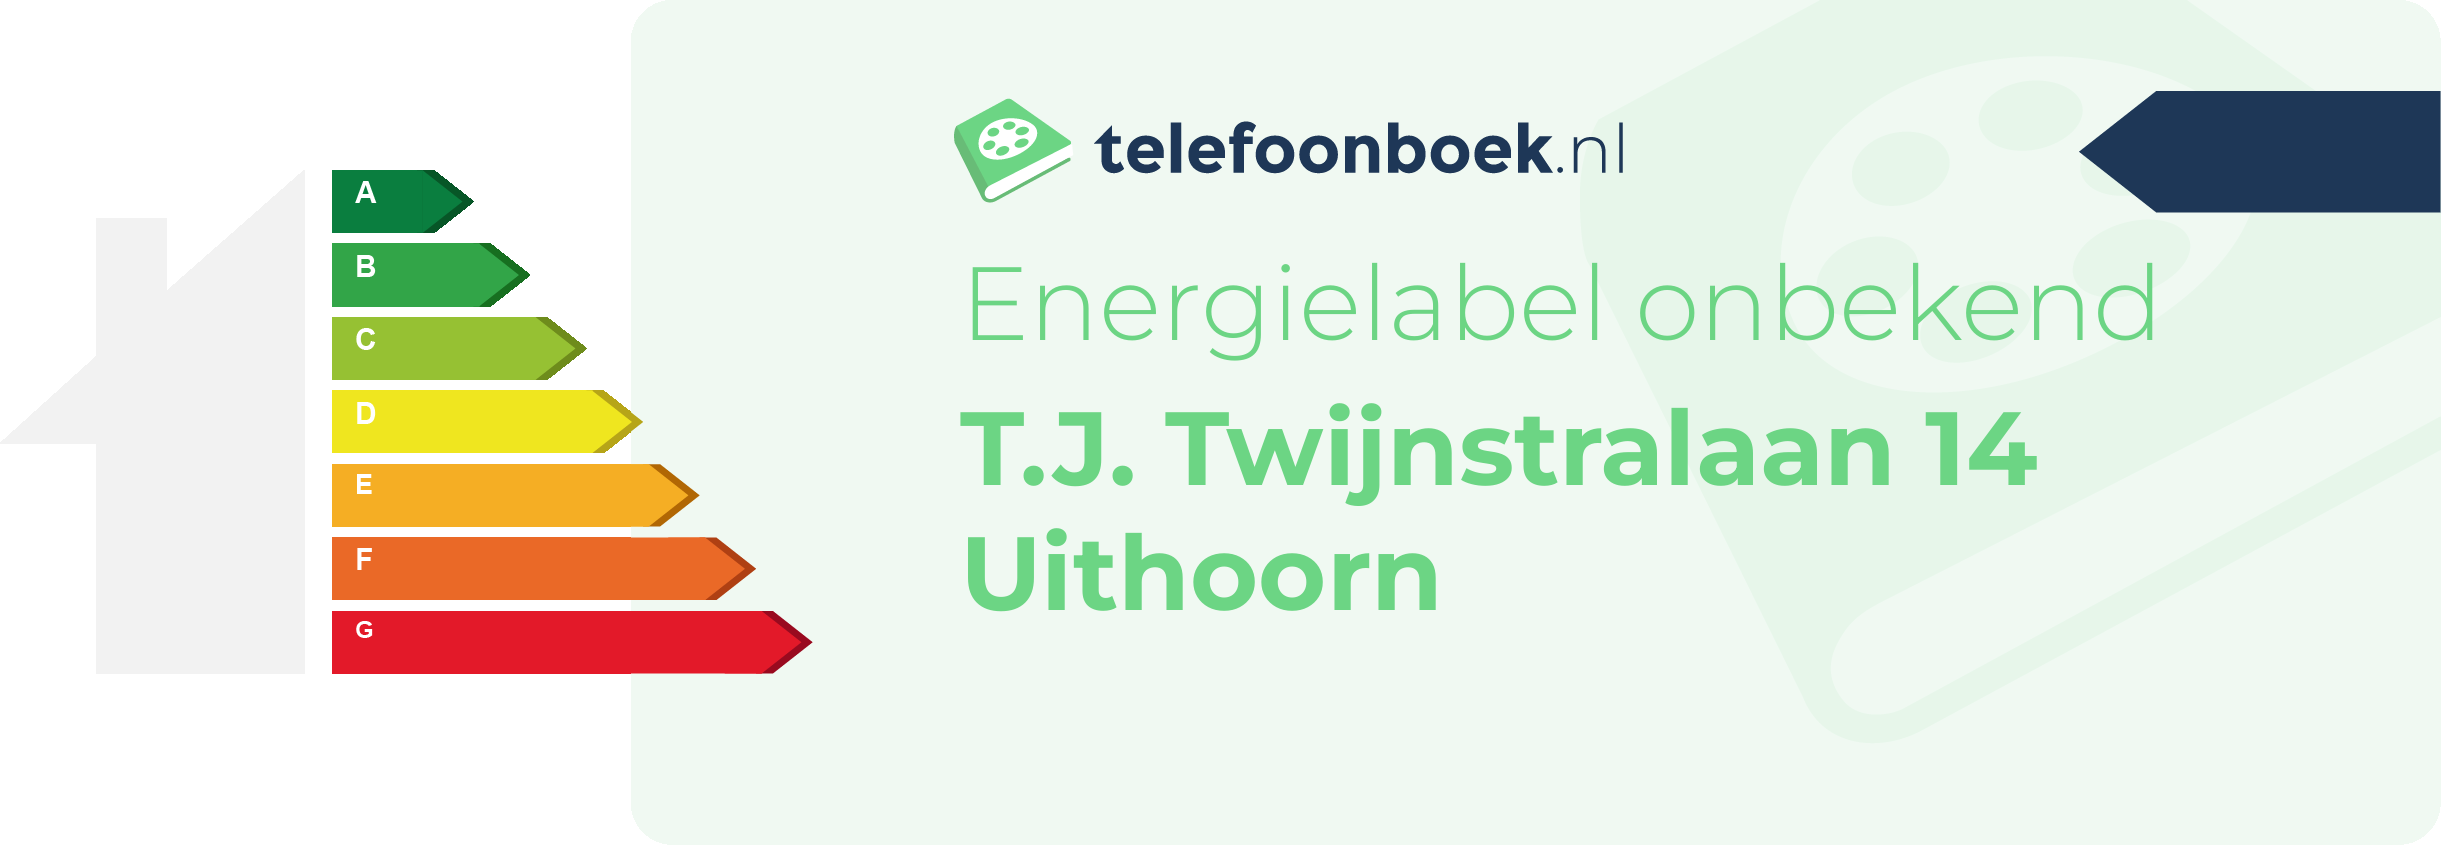 Energielabel T.J. Twijnstralaan 14 Uithoorn